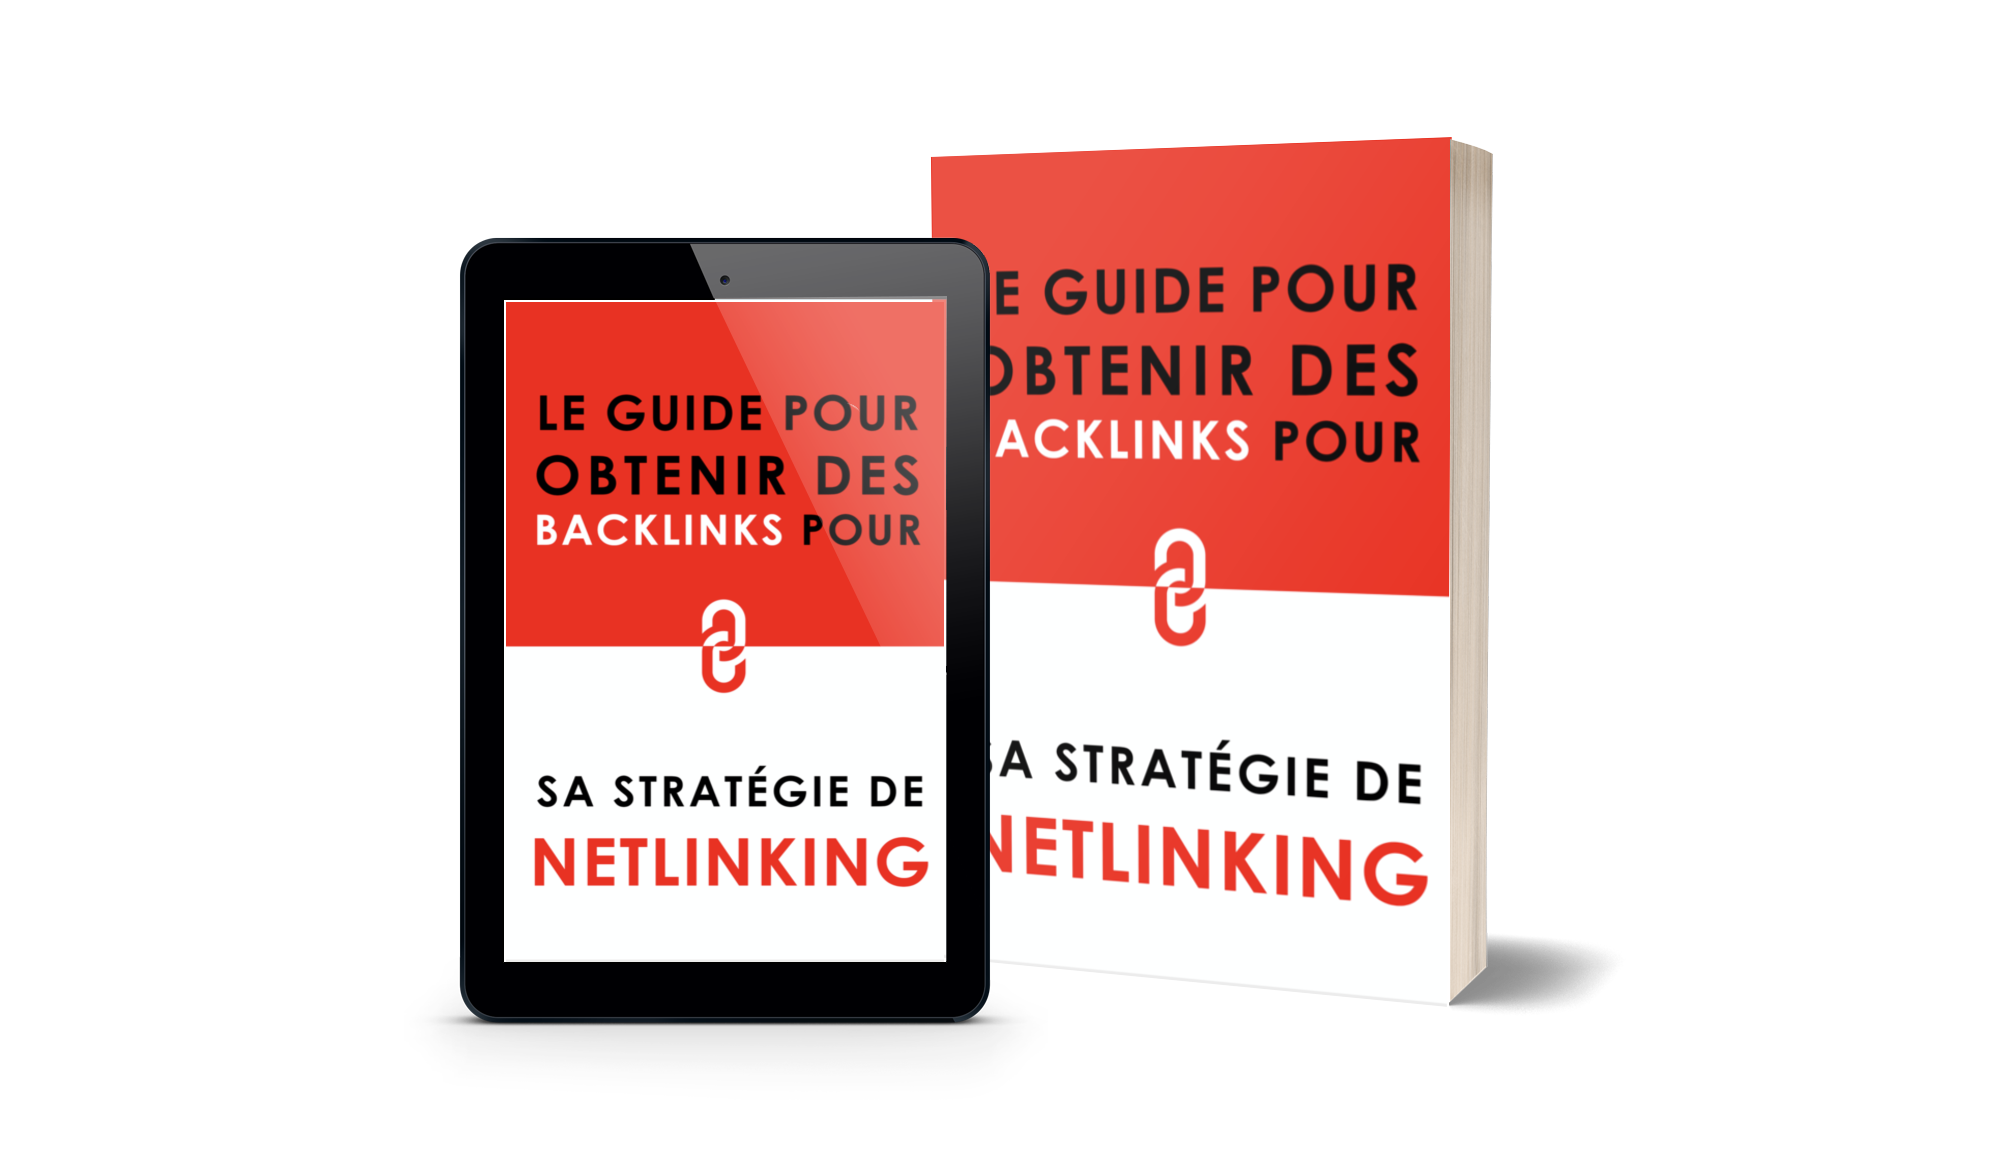 Le guide pour obtenir des backlinks pour sa stratégie de netlinking